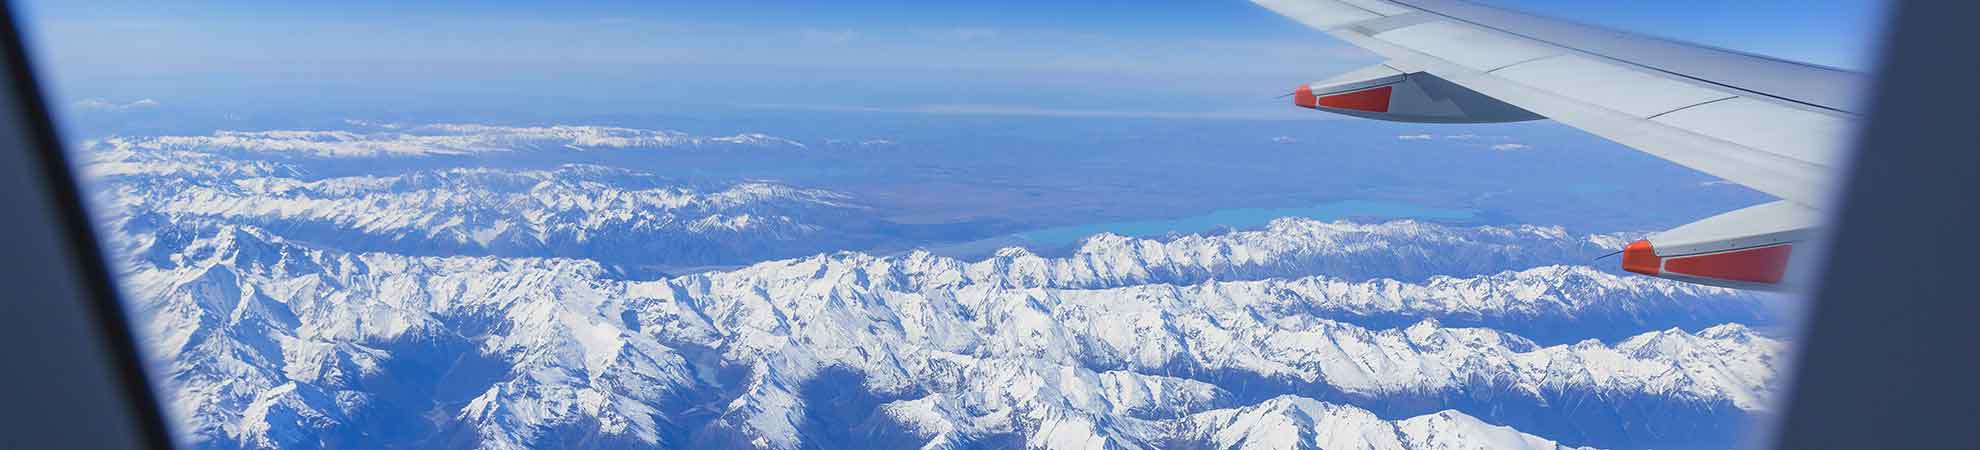 Comment se rendre en avion en Nouvelle Zélande et réussir son voyage malgré le long vol ?